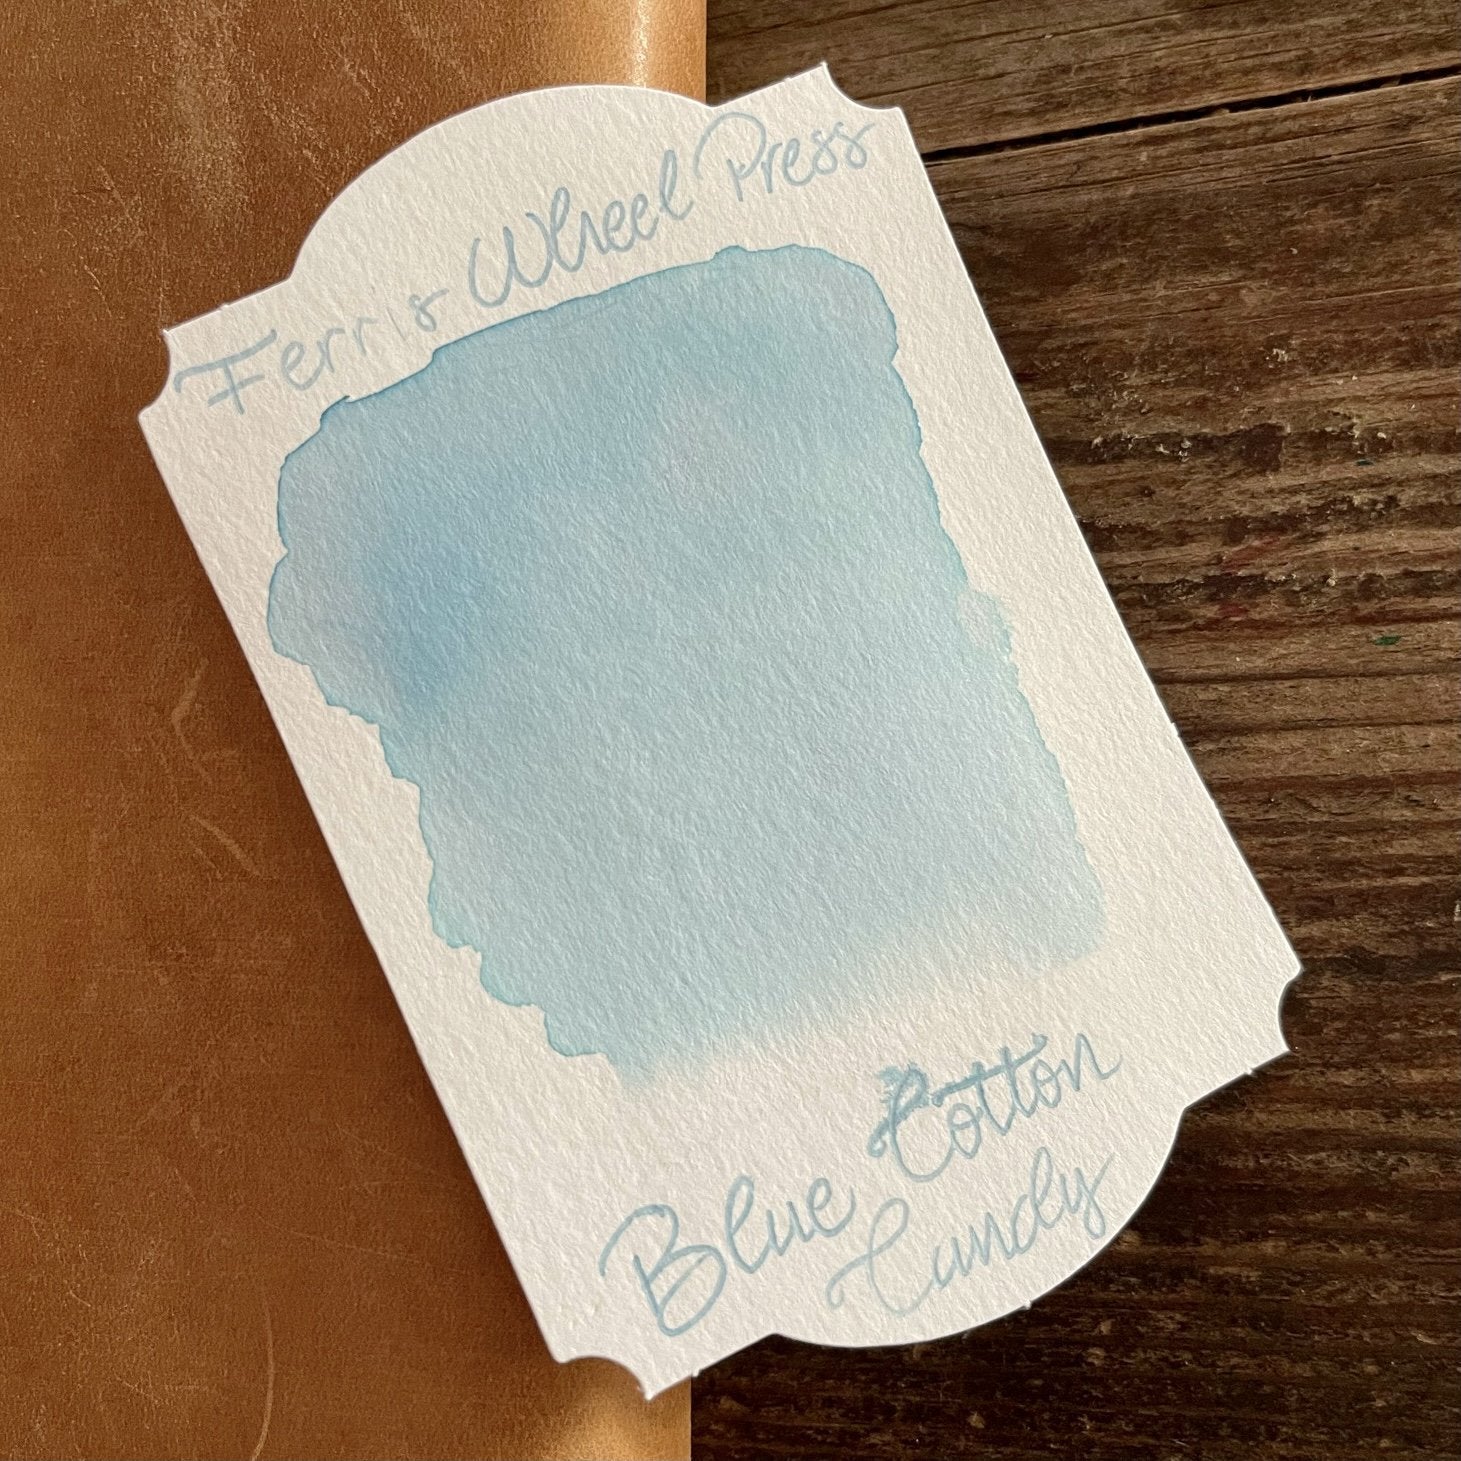 Ferris Wheel Press Fountain Pen Ink - Jelly Bean Blue, 38 ml